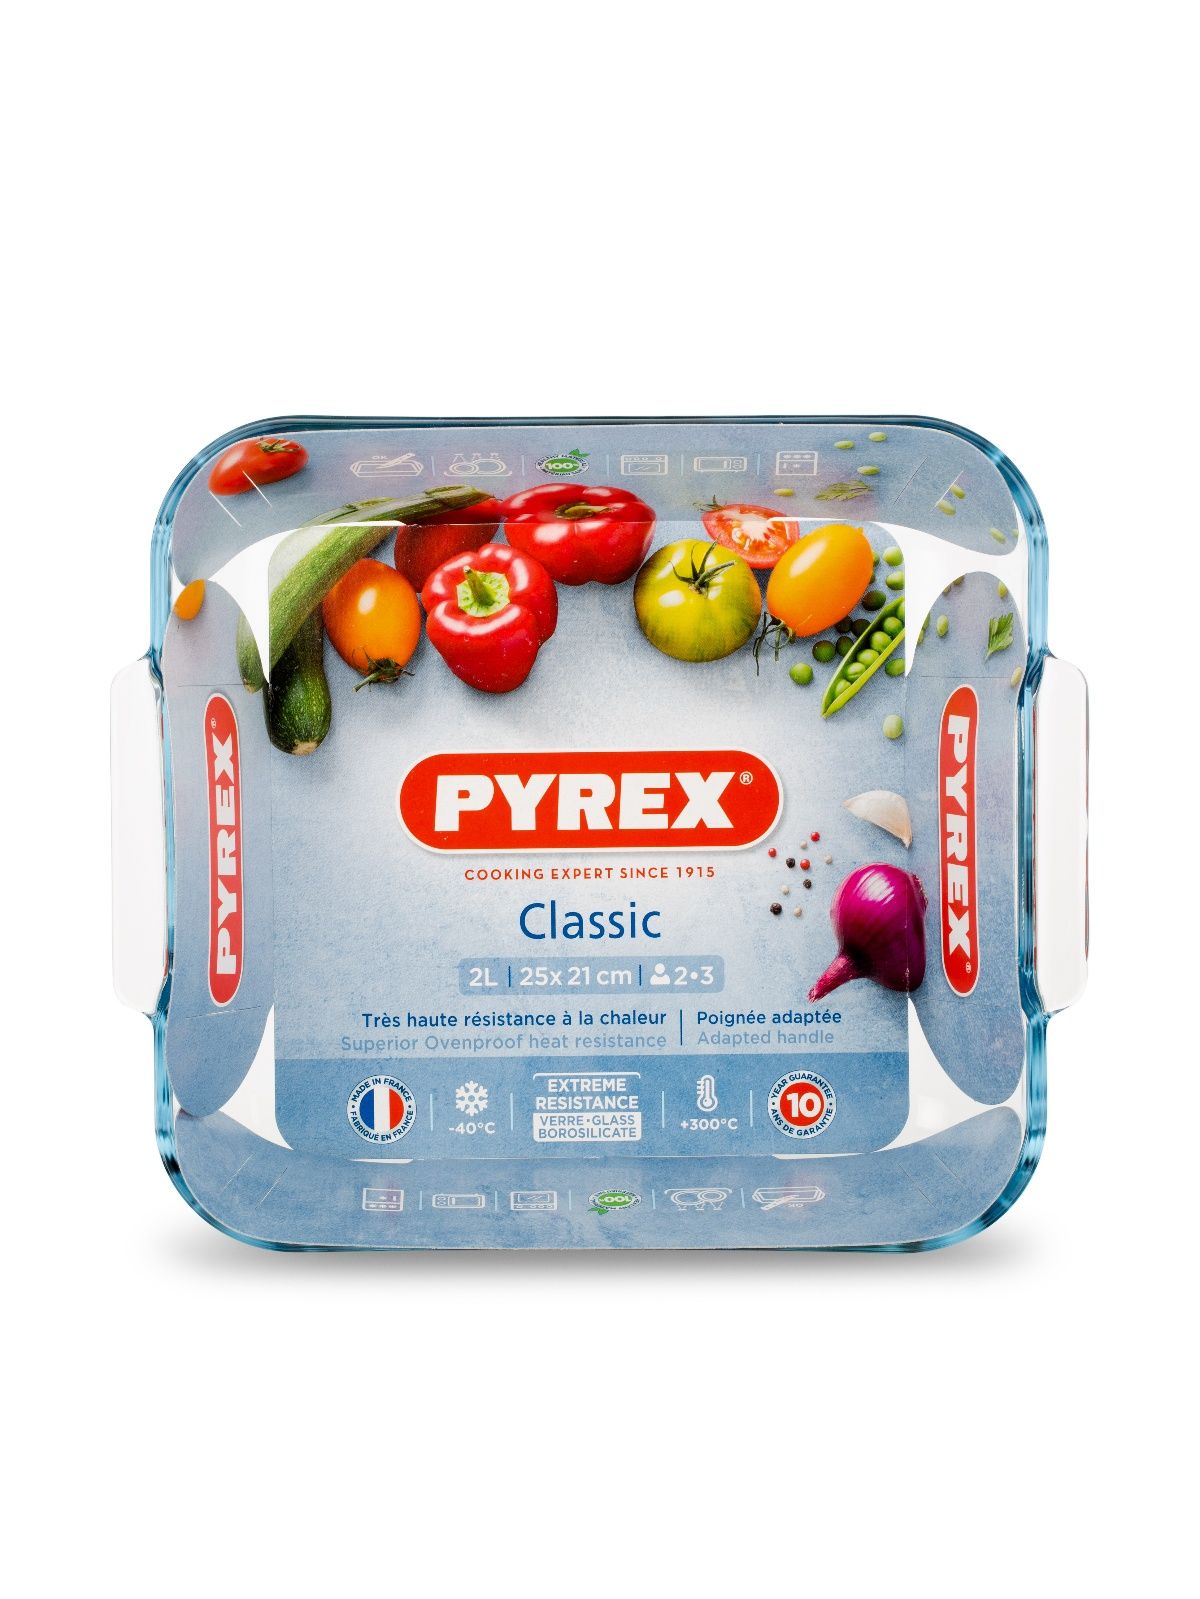 блюдо для запекания и выпечки smart cooking 25x21см квадратное pyrex 220b000 7046 Блюдо для запекания и выпечки SMART COOKING 25x21см квадратное PYREX 220B000/7046